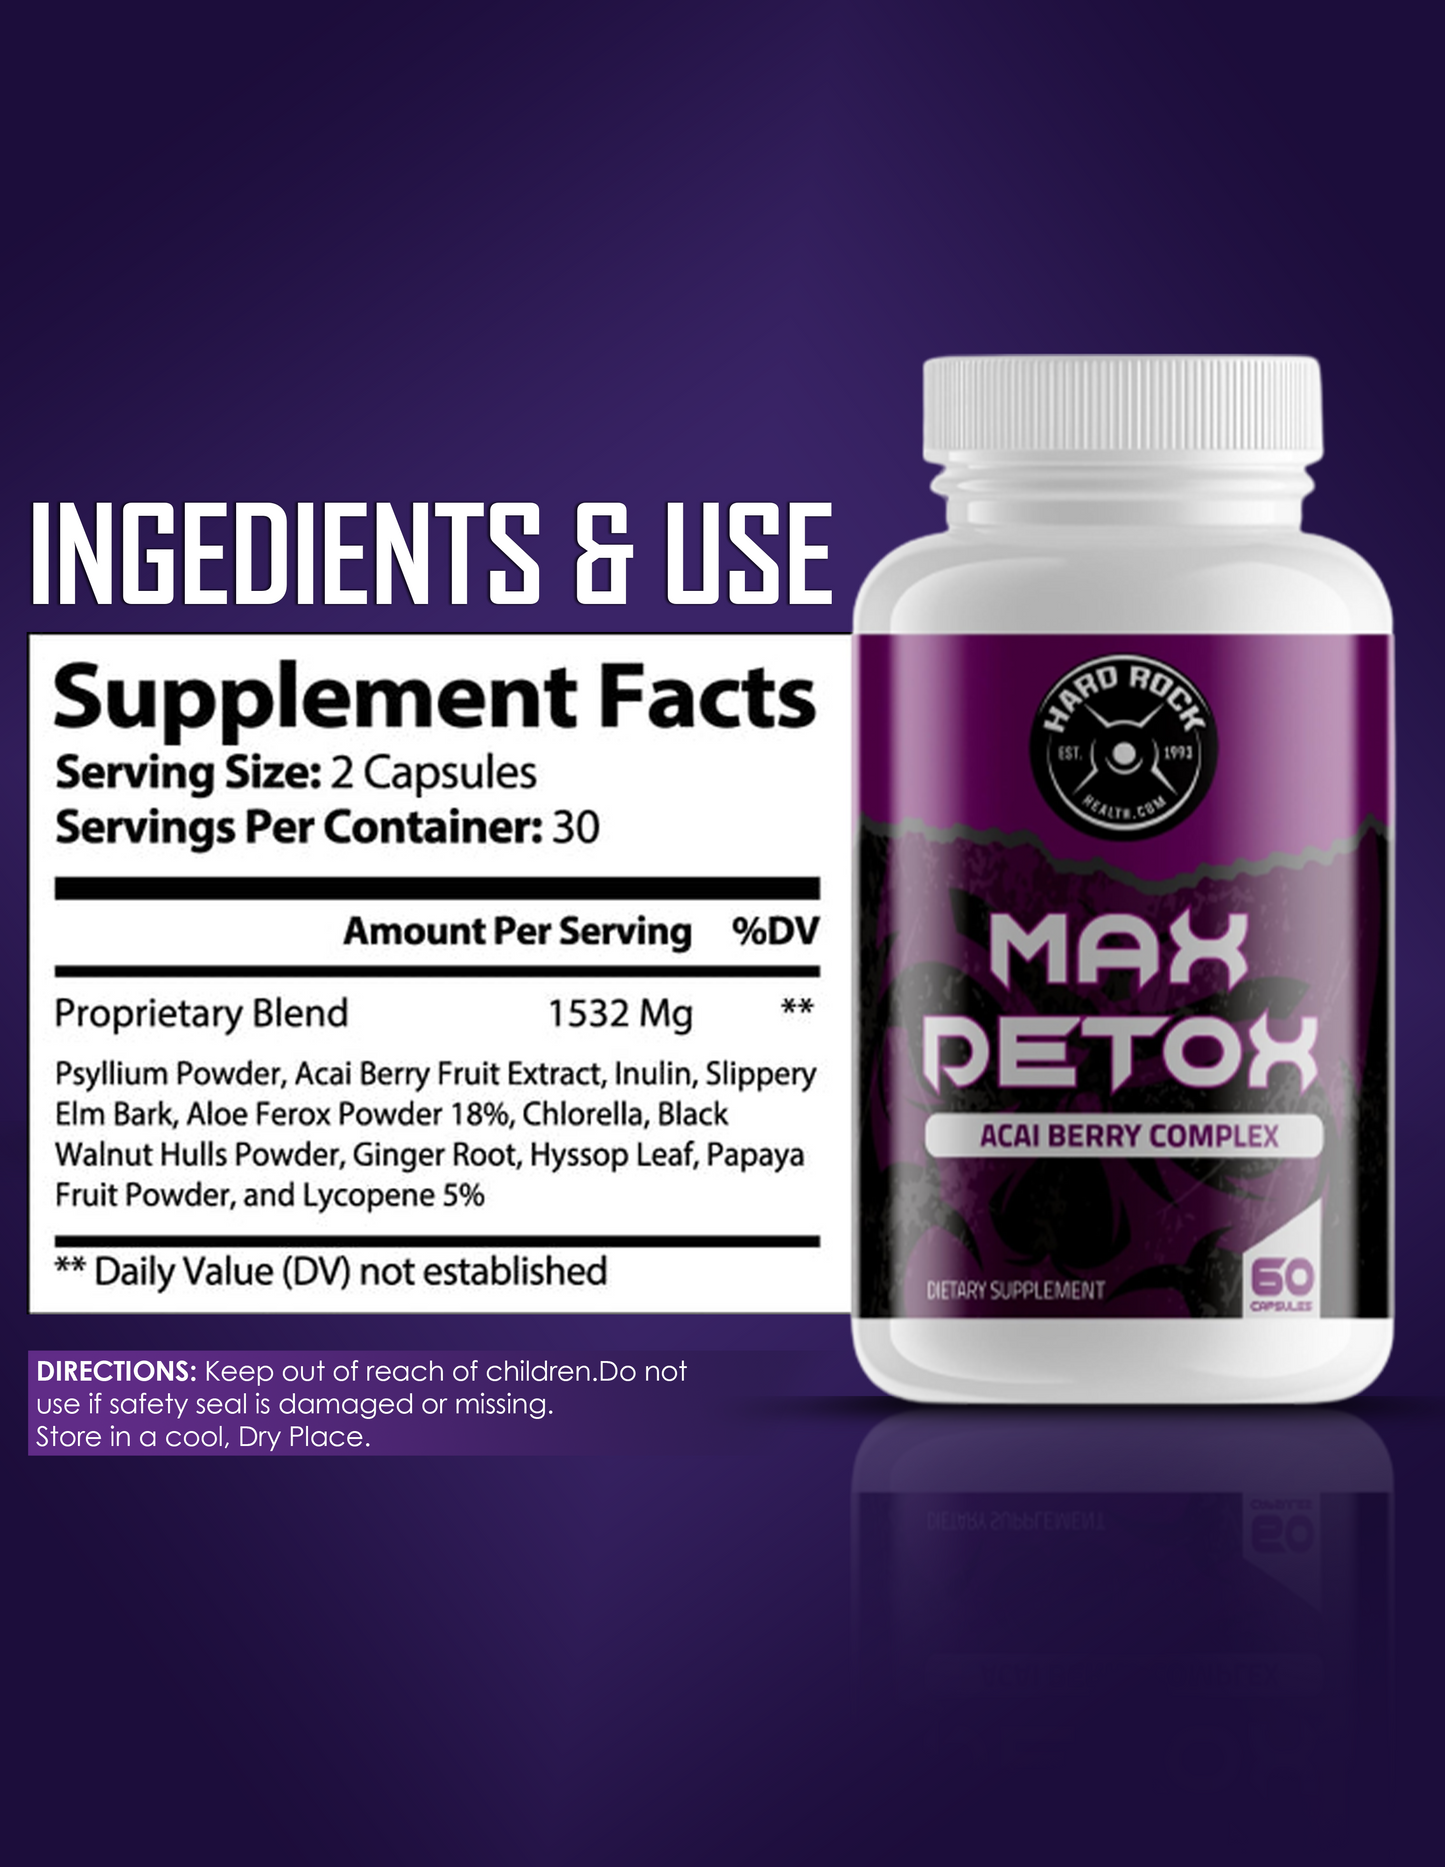 Max detox ACAI Berry Complex- 100% Natural 60 Capsules